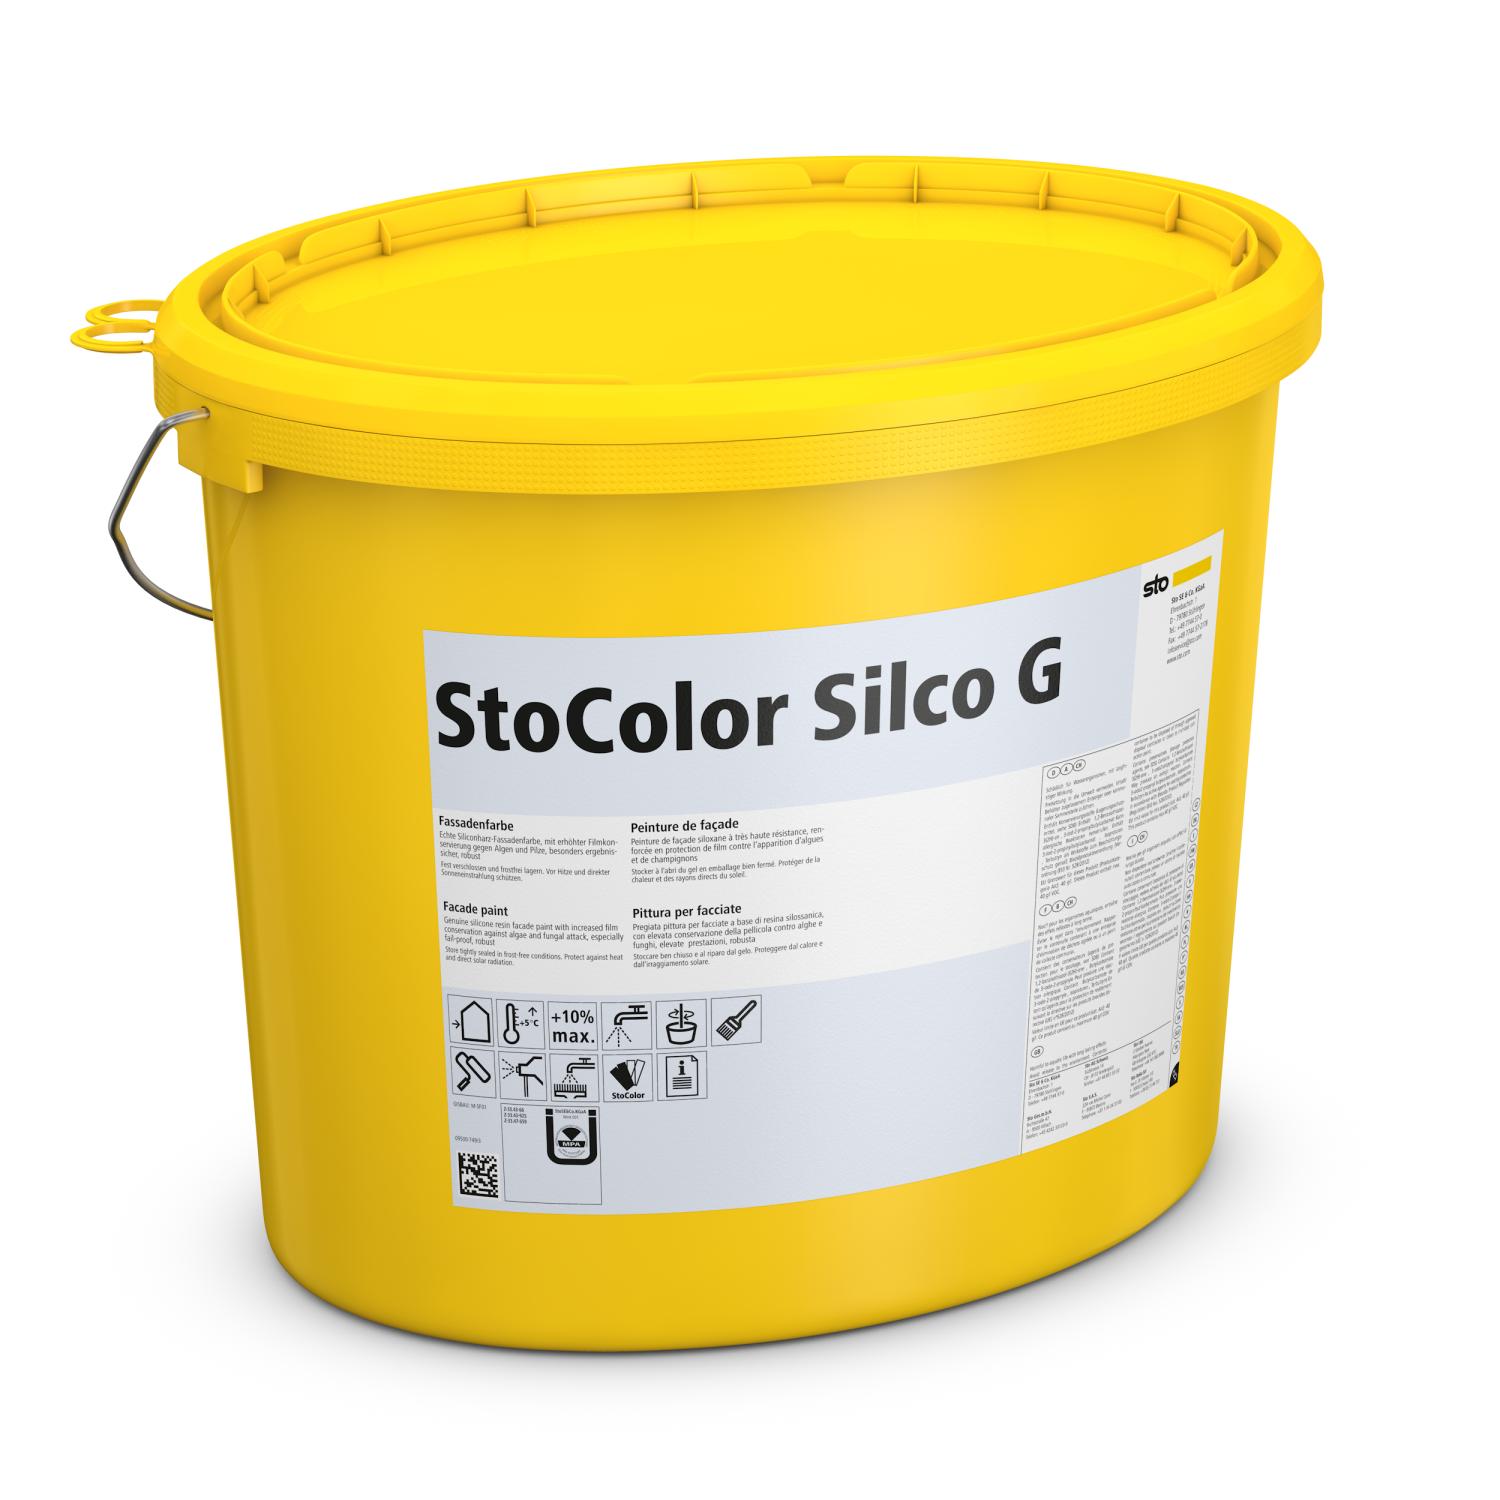 StoColor Silco G Fassadenfarbe mit zusätzlichem Schutz vor Algen und Pilzen